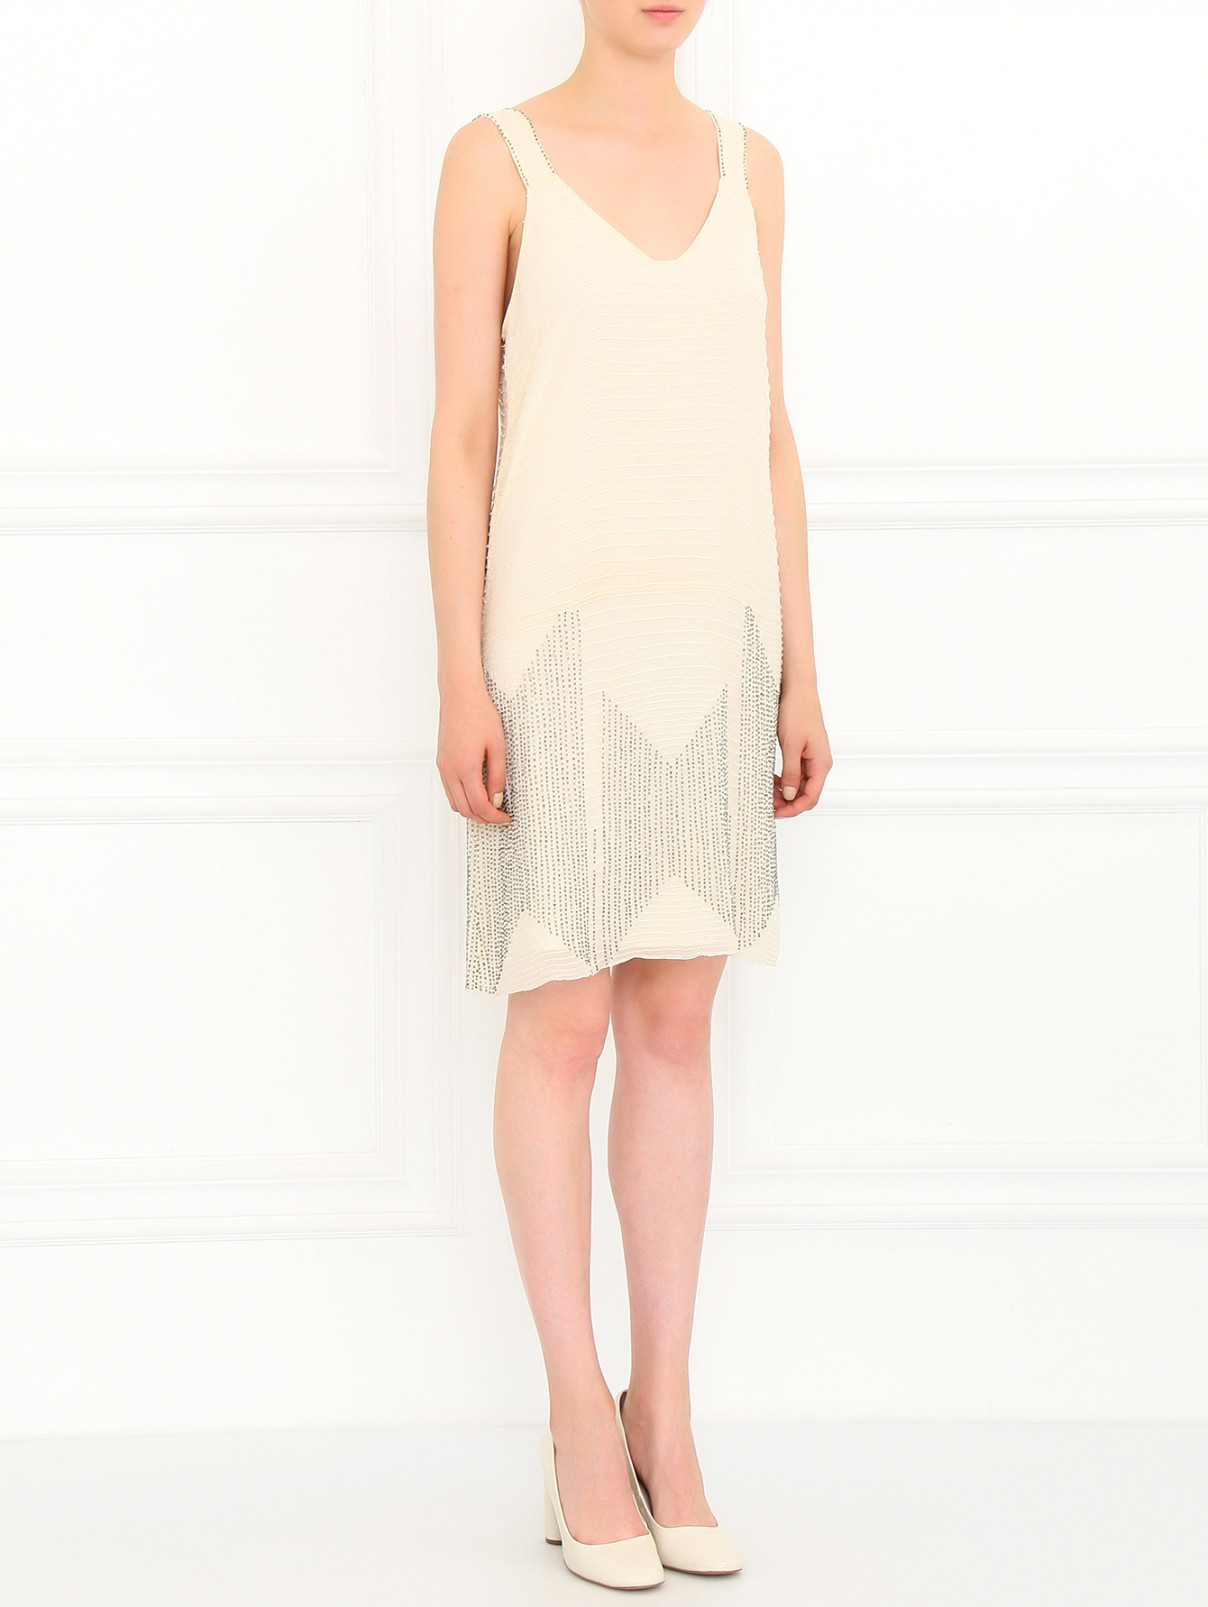 Платье из шелка декорированное стеклярусом Joie  –  Модель Общий вид  – Цвет:  Белый